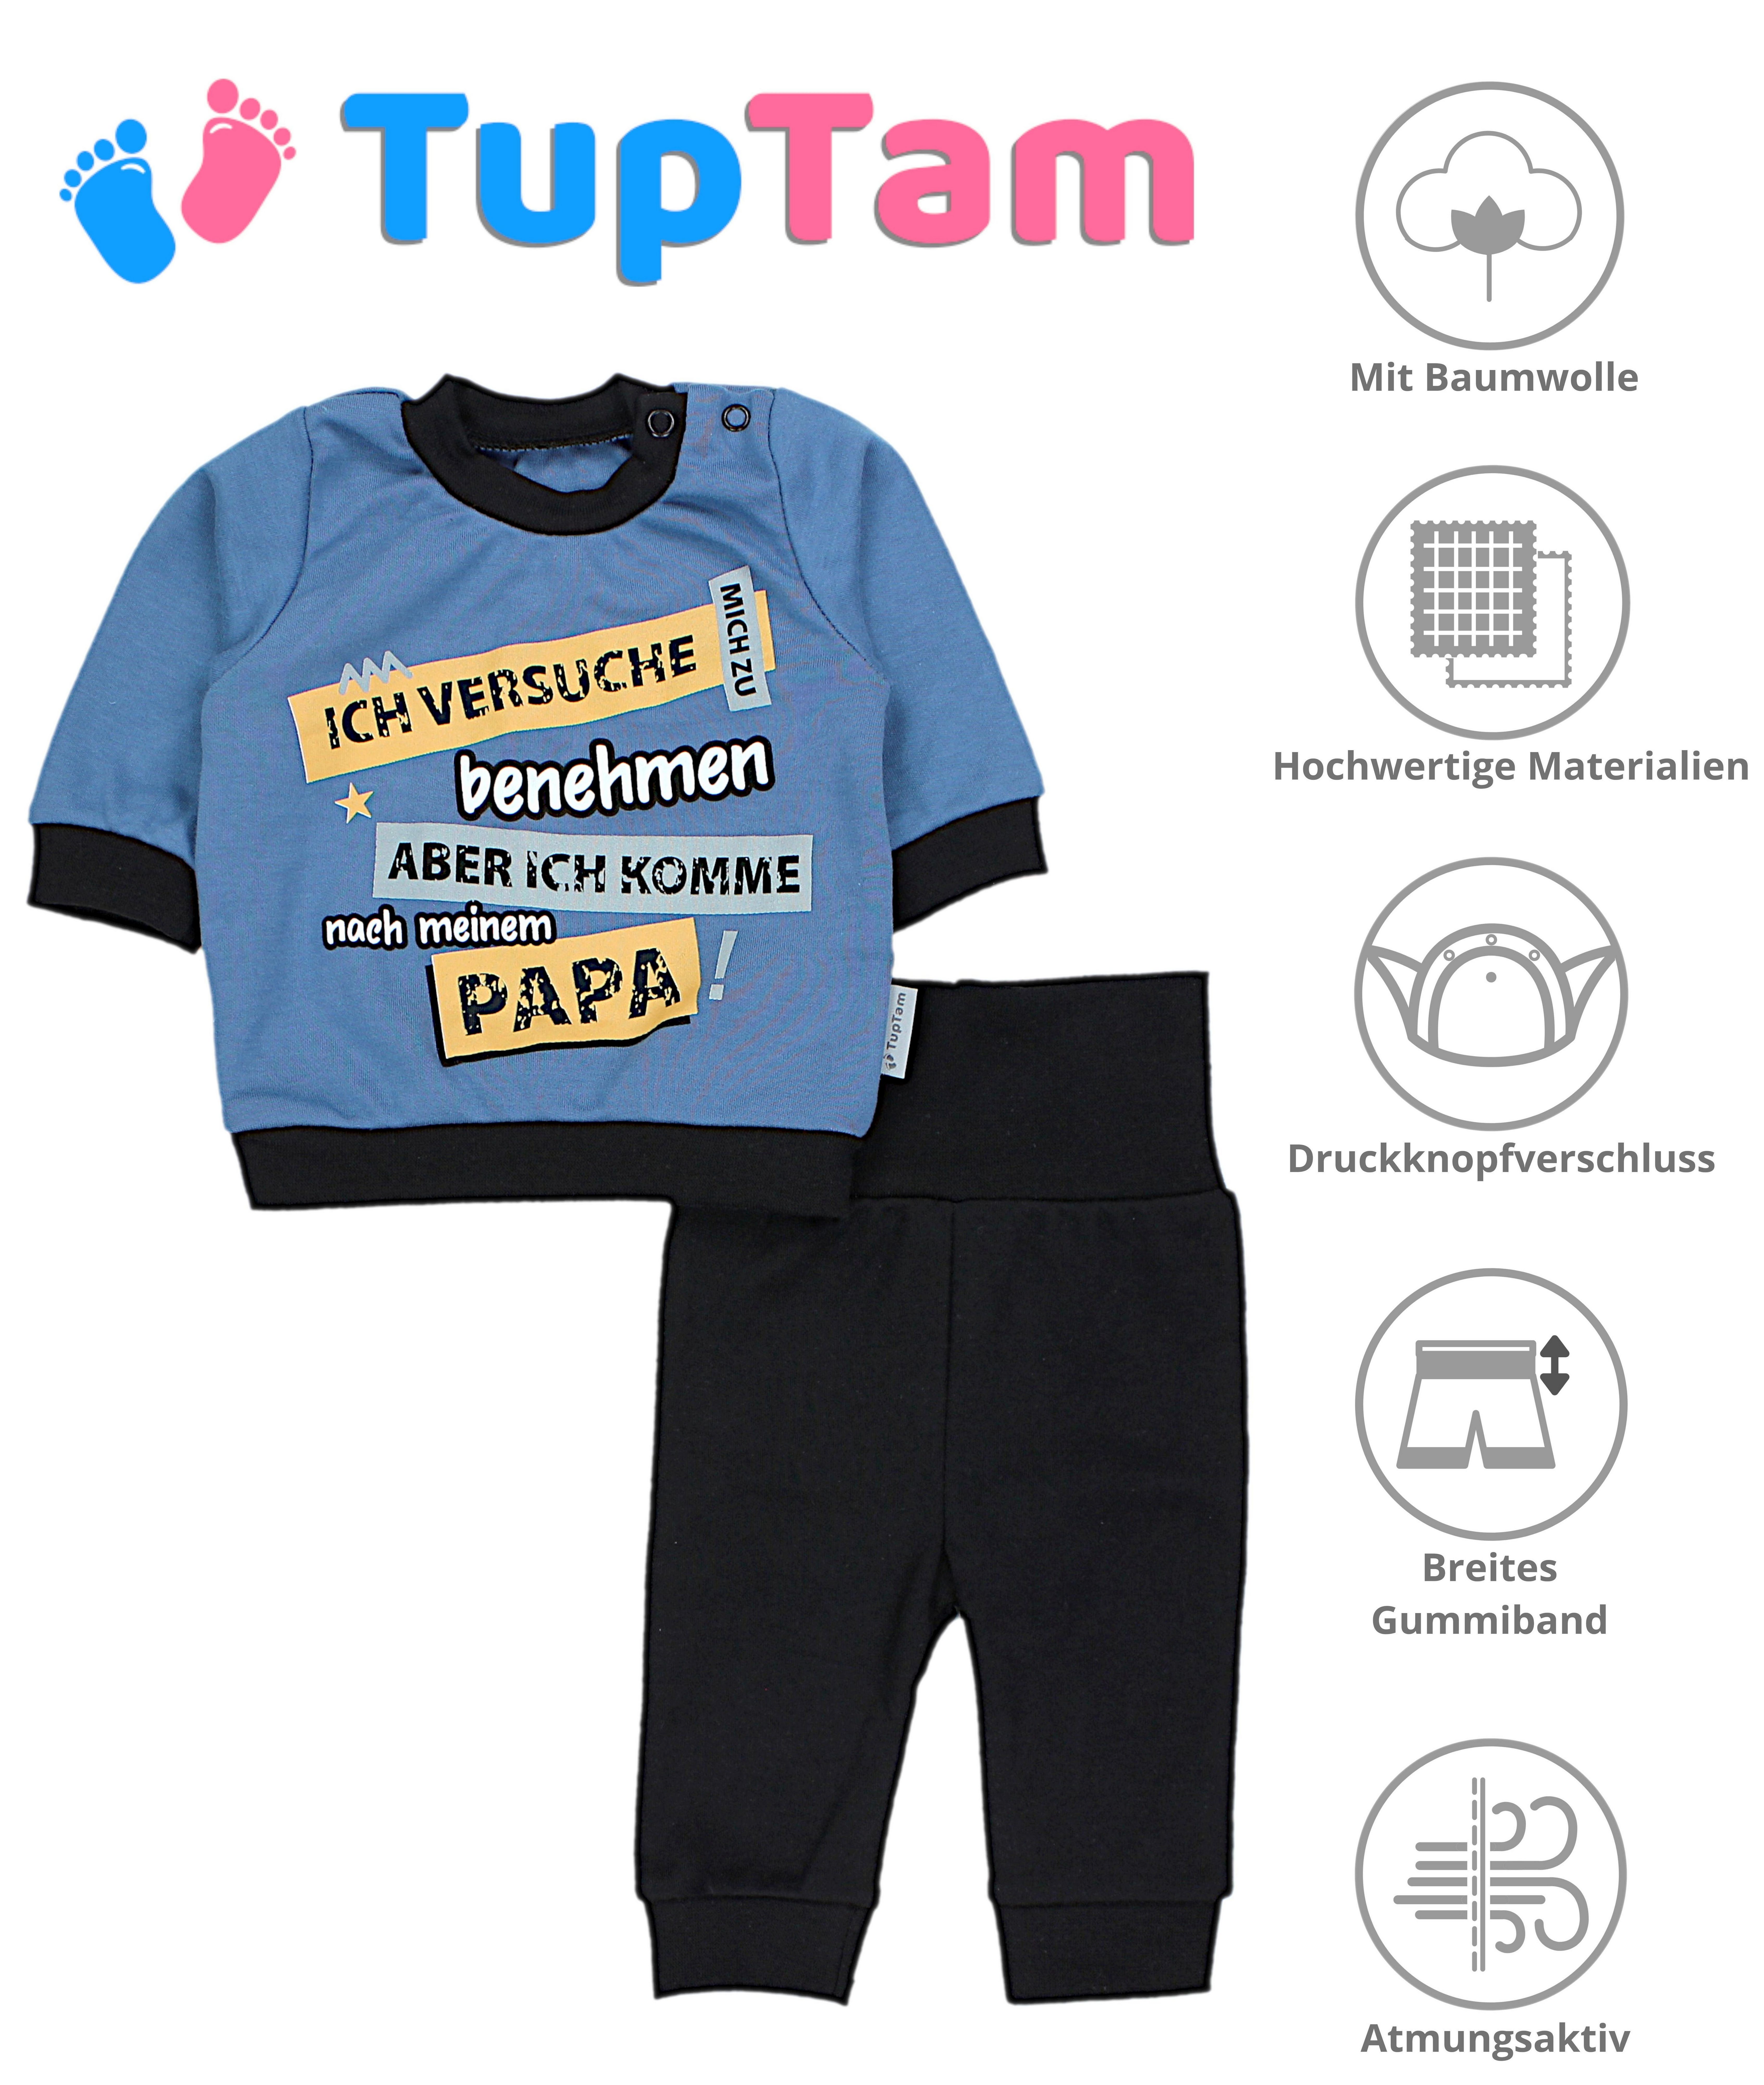 Print / Babyhose Outfit TupTam mit versuche Ich Babykleidung Erstausstattungspaket Schwarz Jeansblau Baby Spruch mich zu Jungen benehmen Langarmshirt